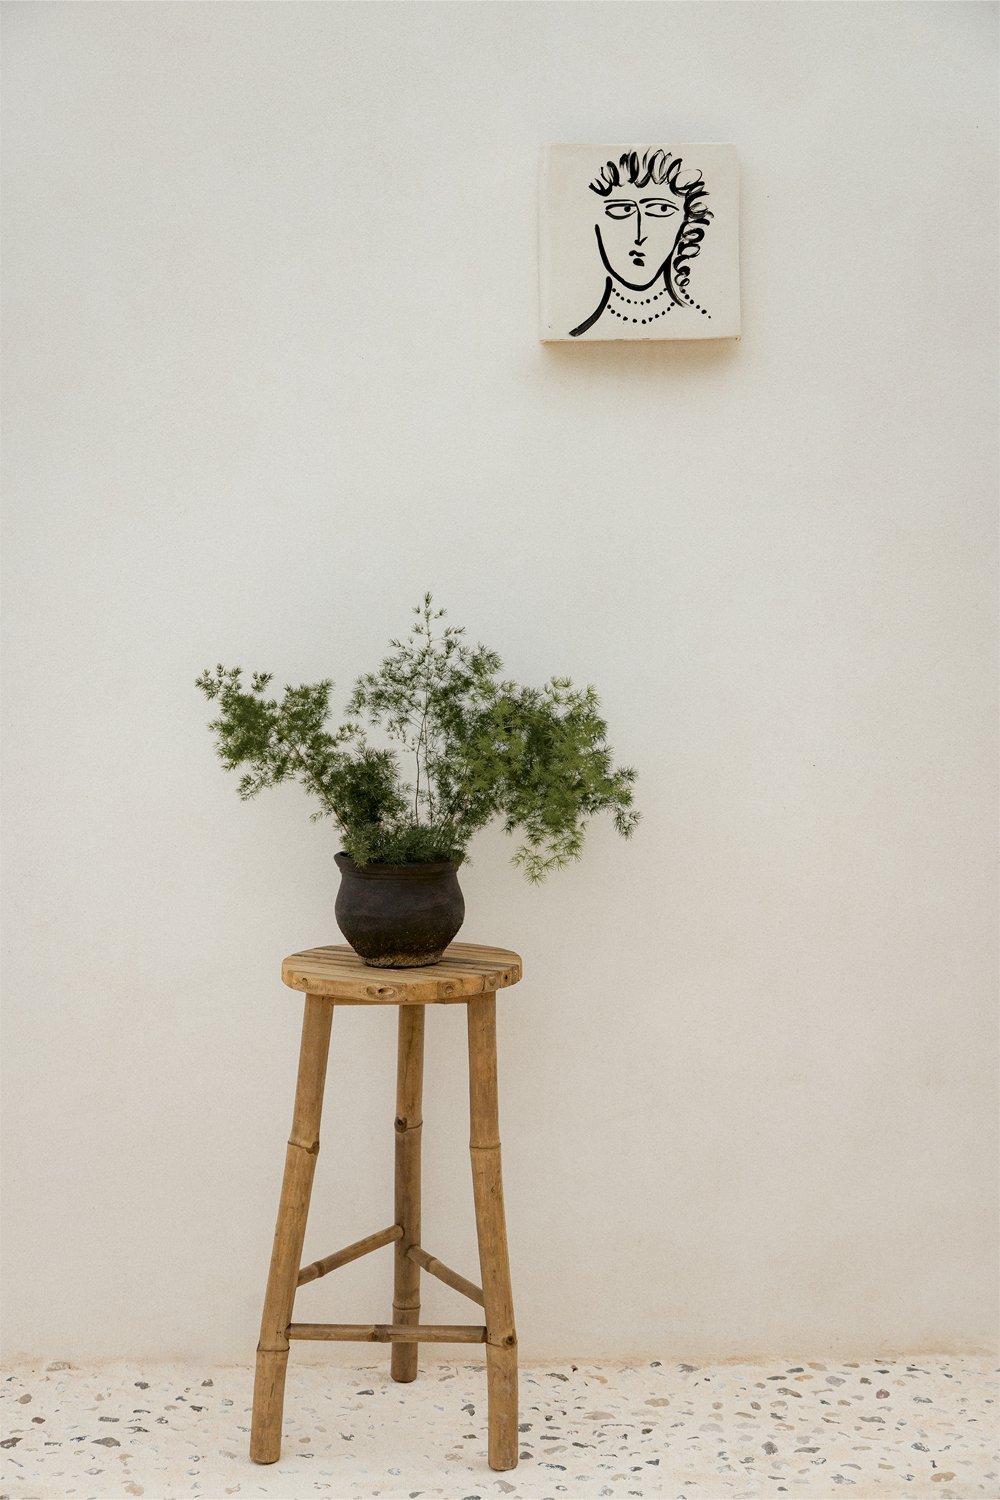 Supporto per piante da giardino in bambù (70 cm) Barlou, immagine della galleria 1